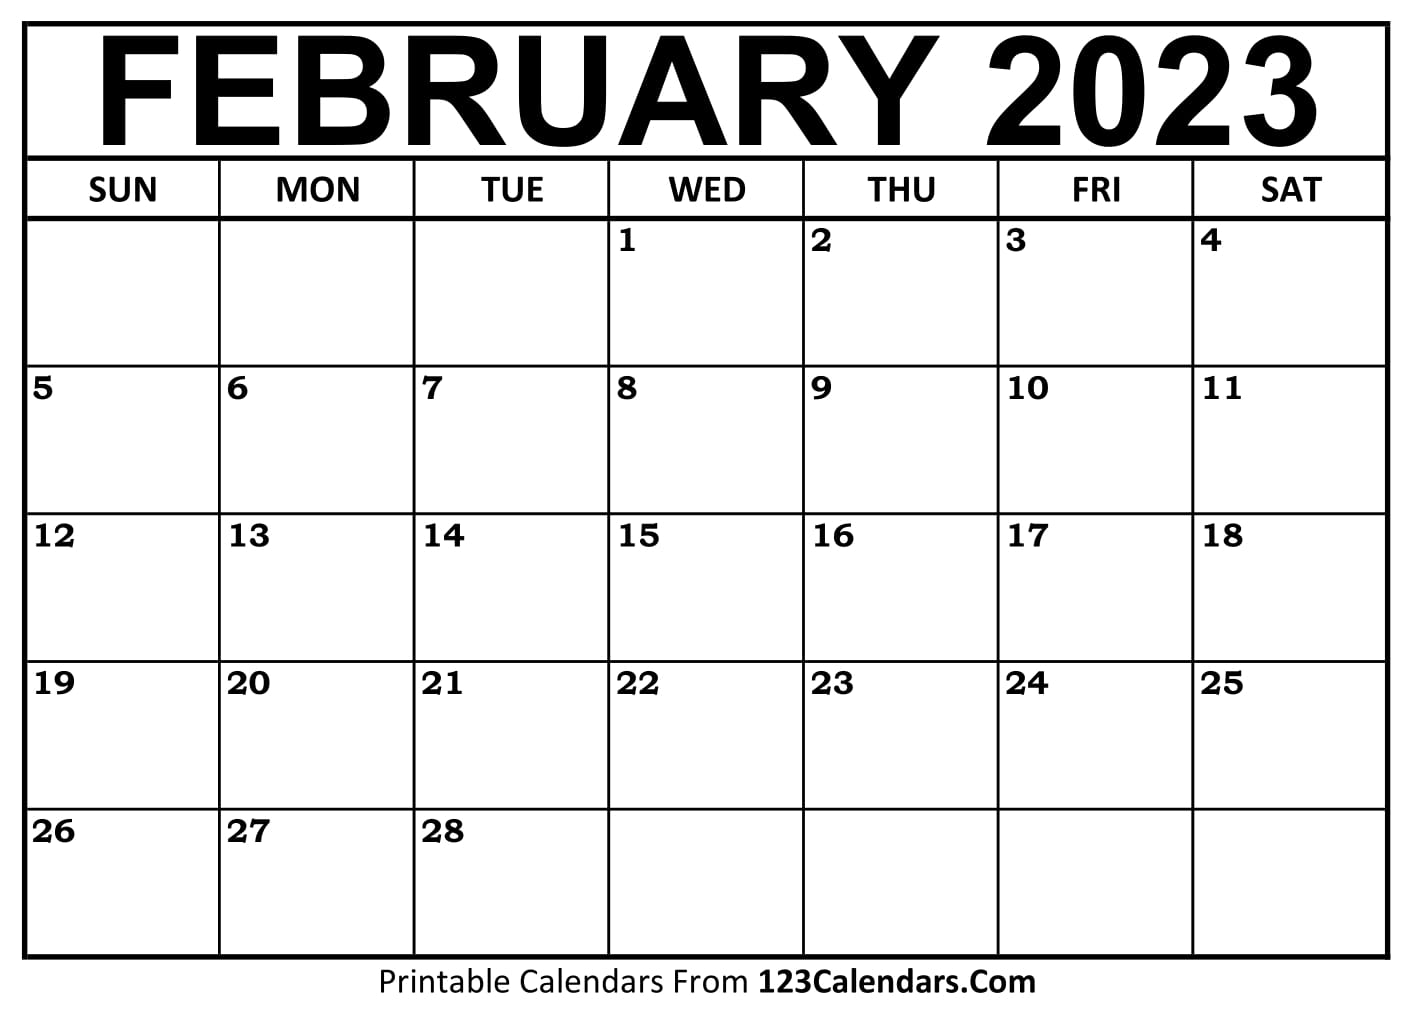 calendar february 2023 get calender 2023 update